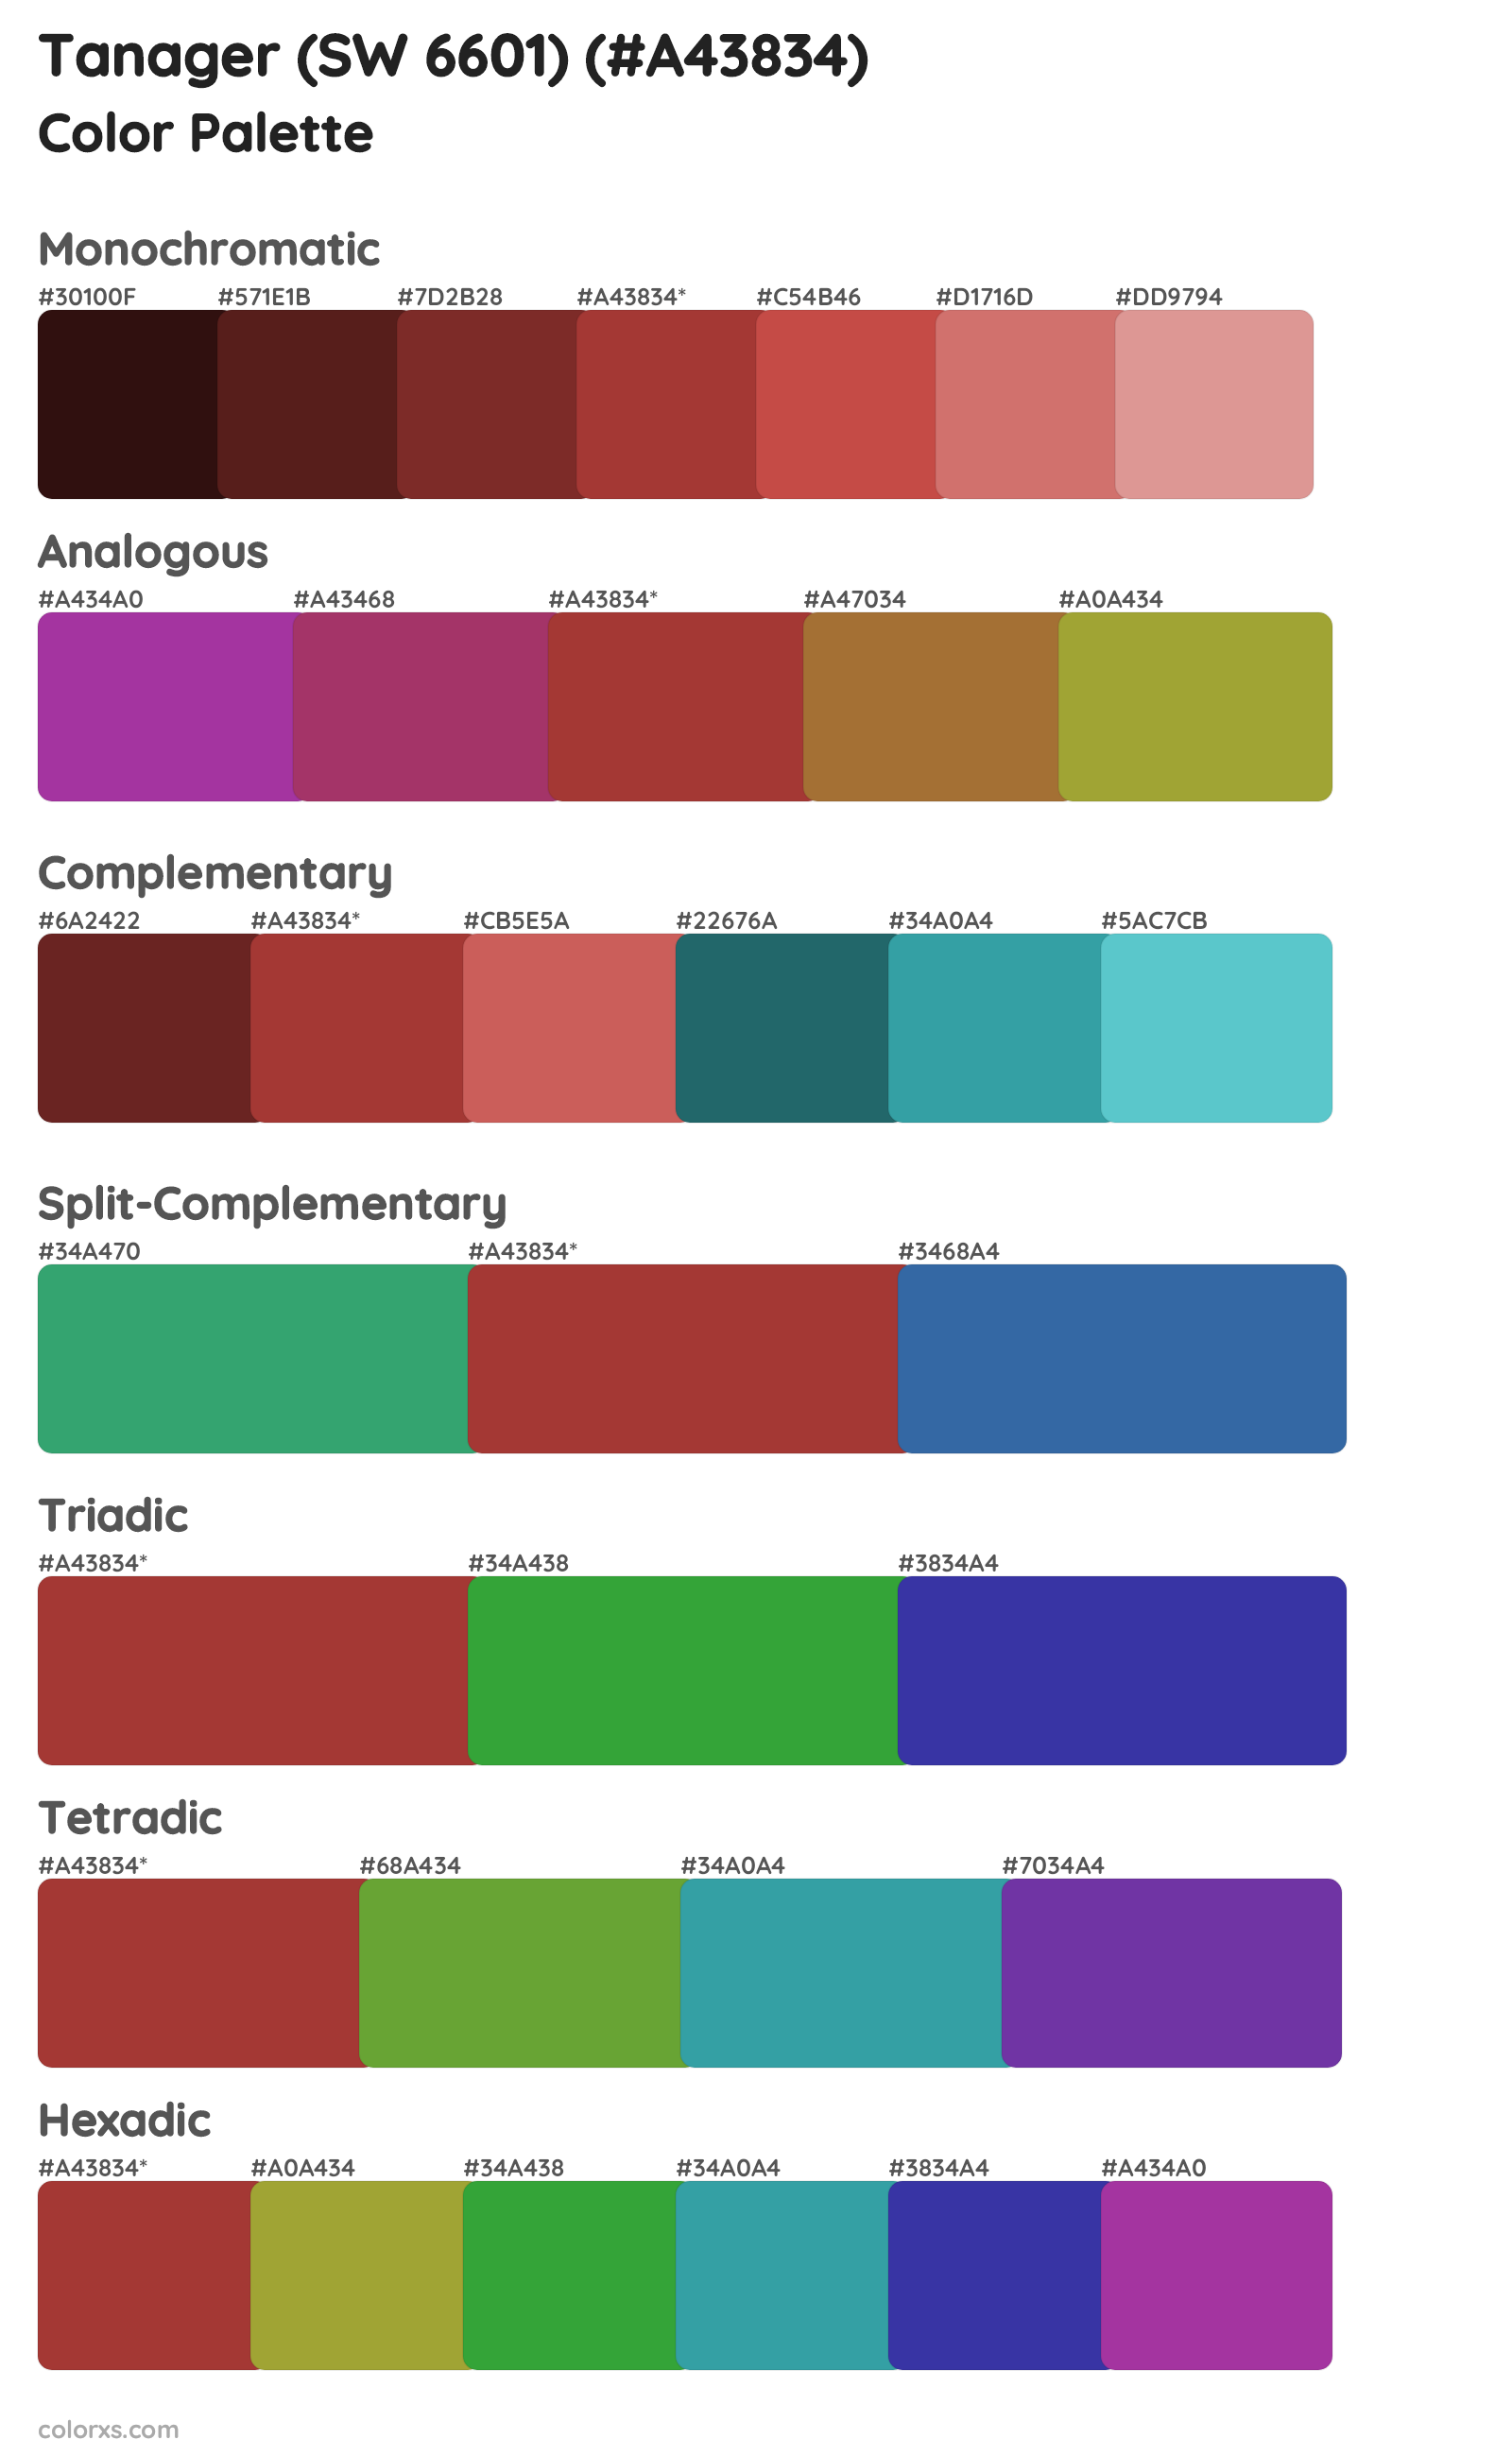 Tanager (SW 6601) Color Scheme Palettes